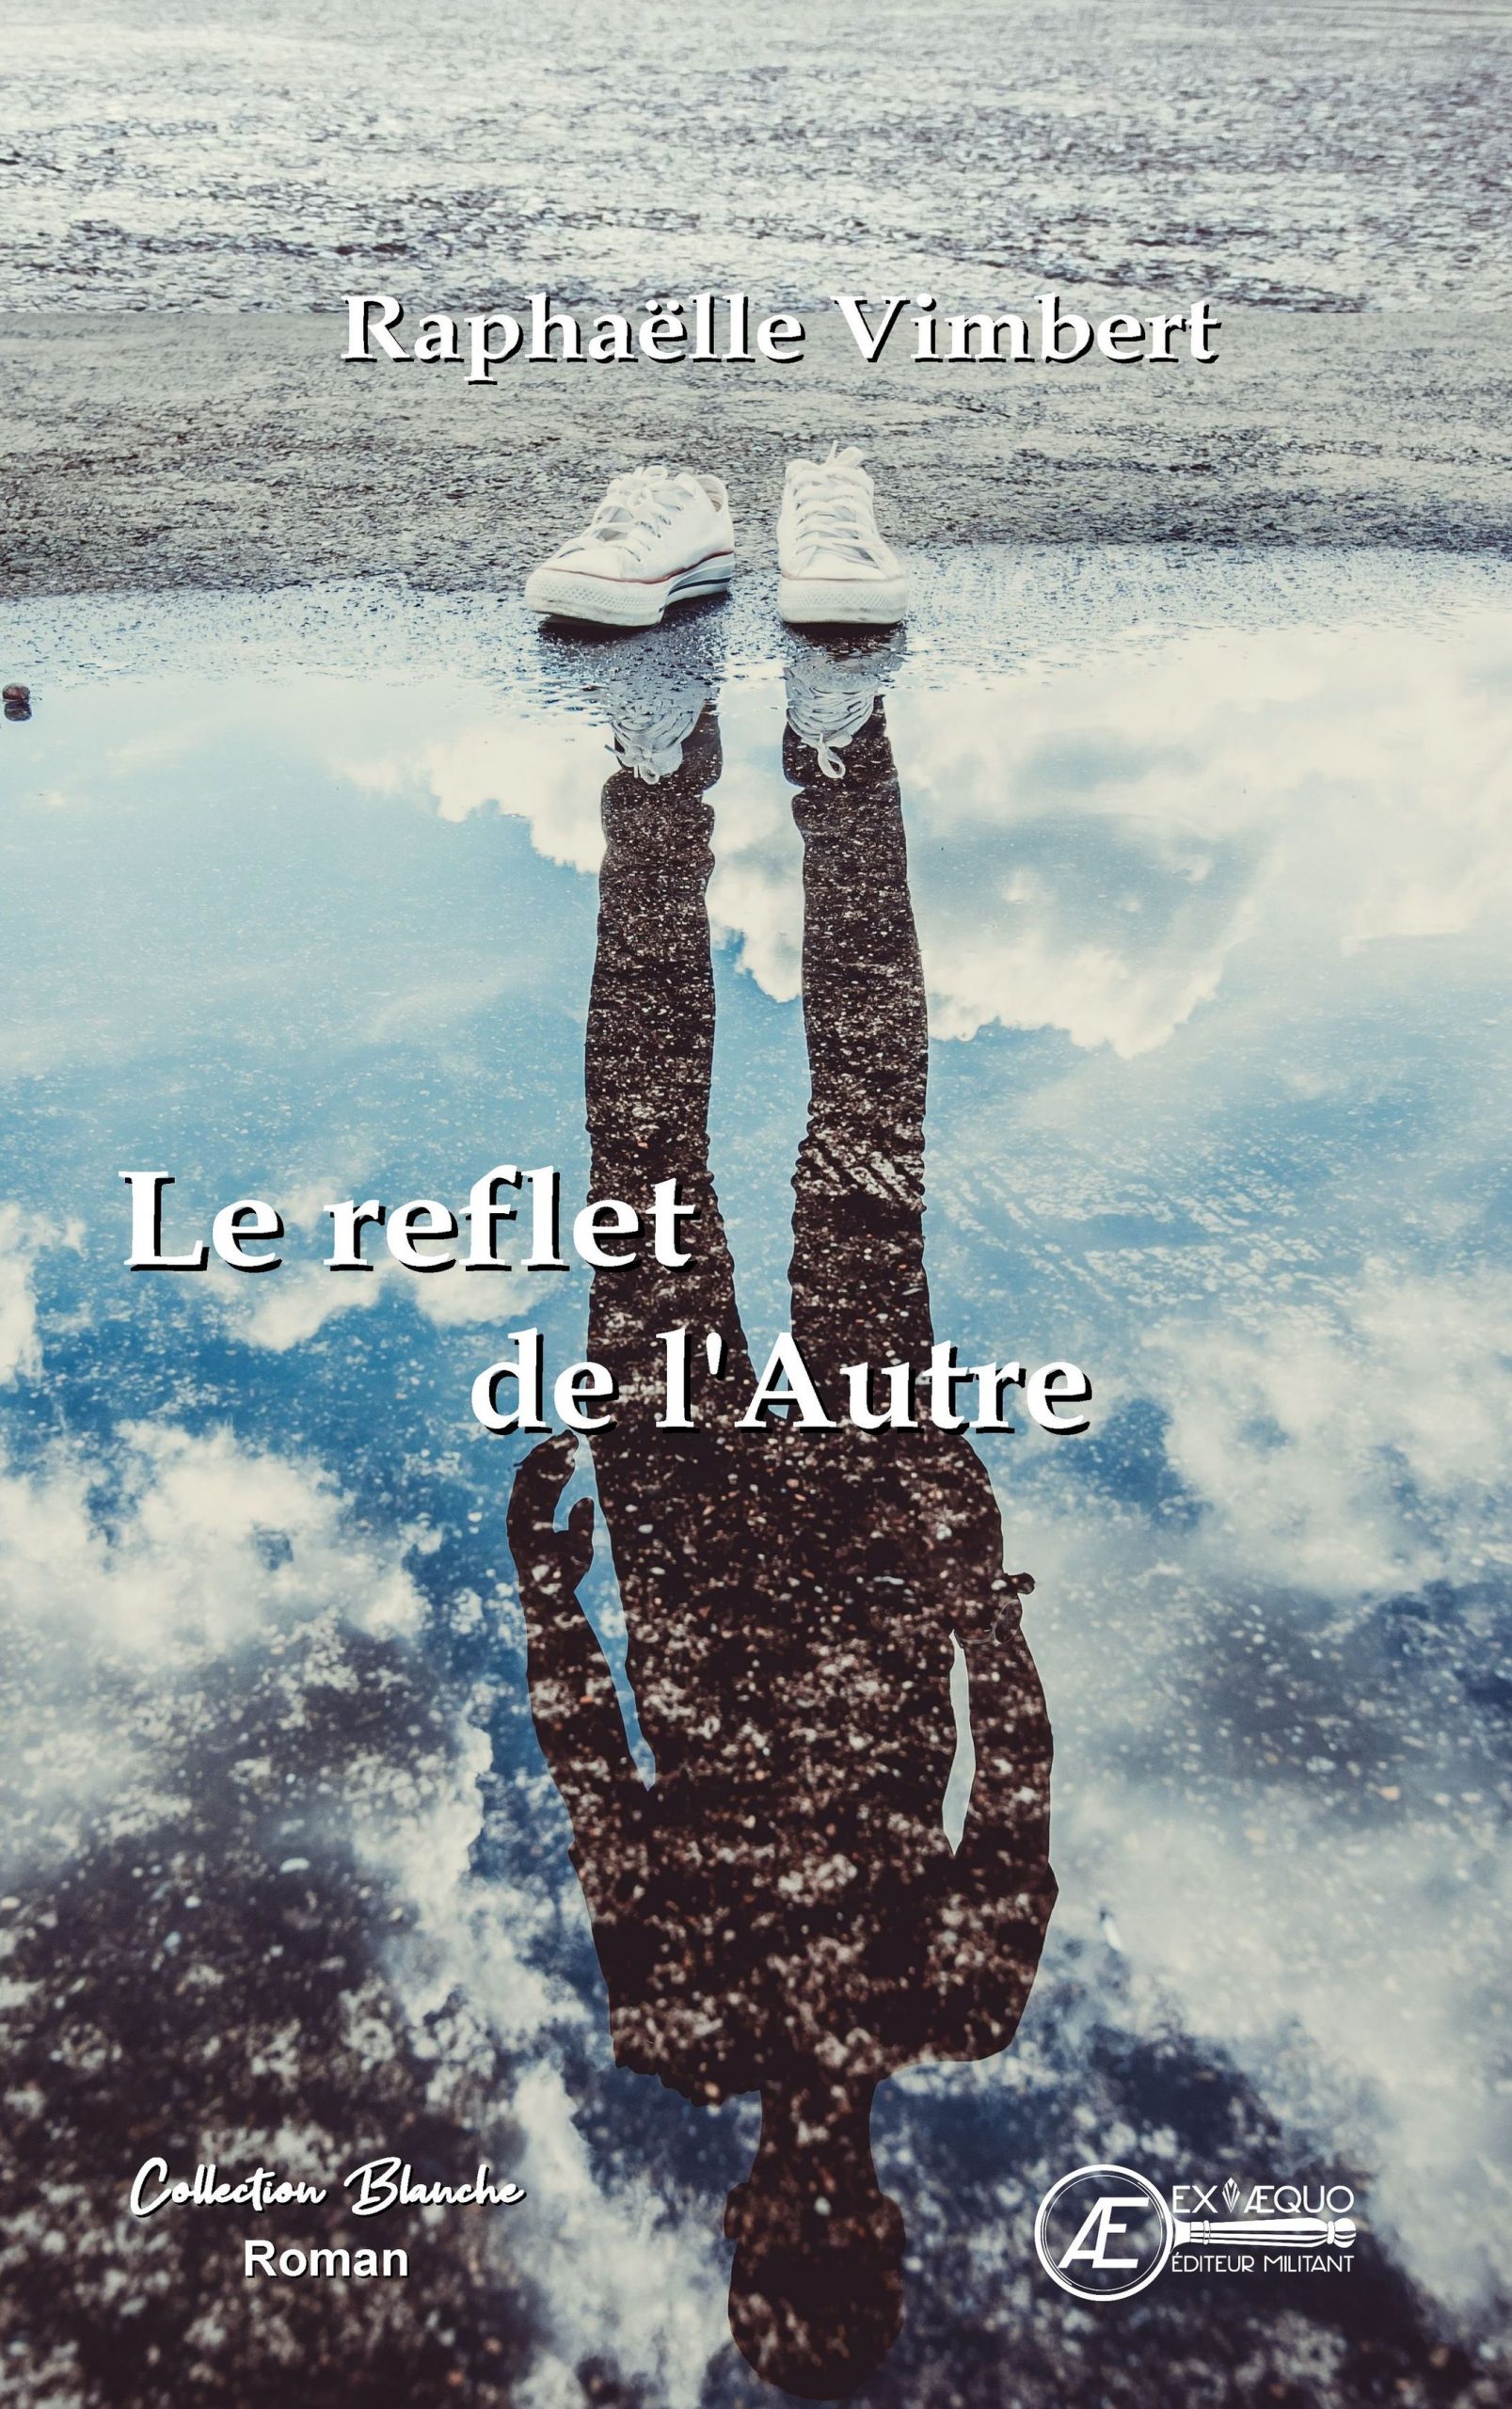 You are currently viewing Le reflet de l’autre, de Raphaelle Vimbert